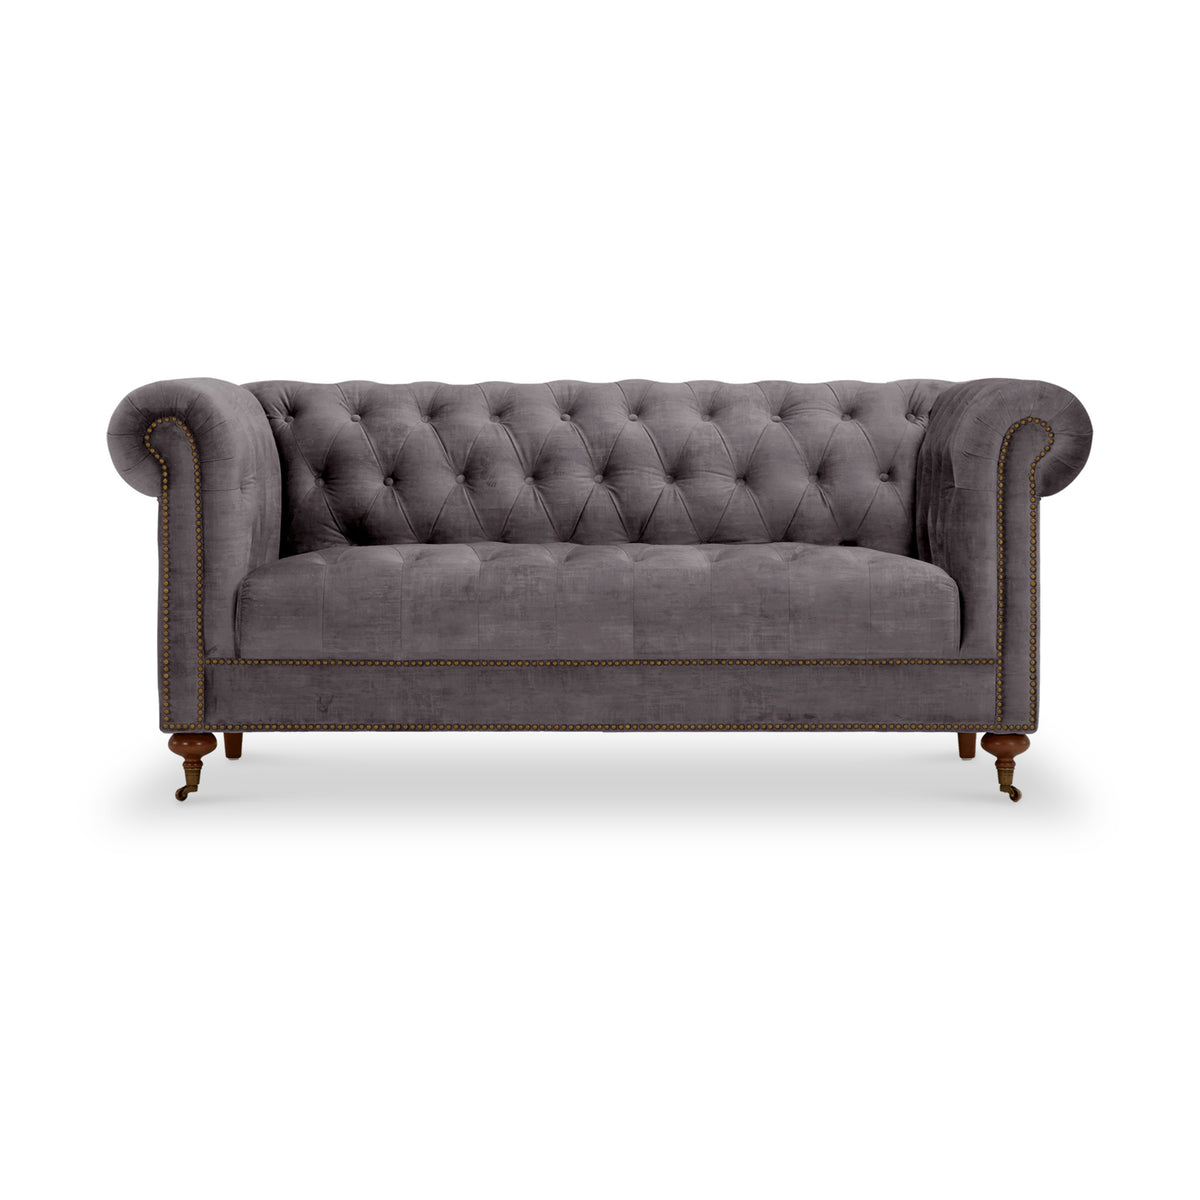 Stanhope Steel Velvet 2 Seater Sofa from Roseland Furniture